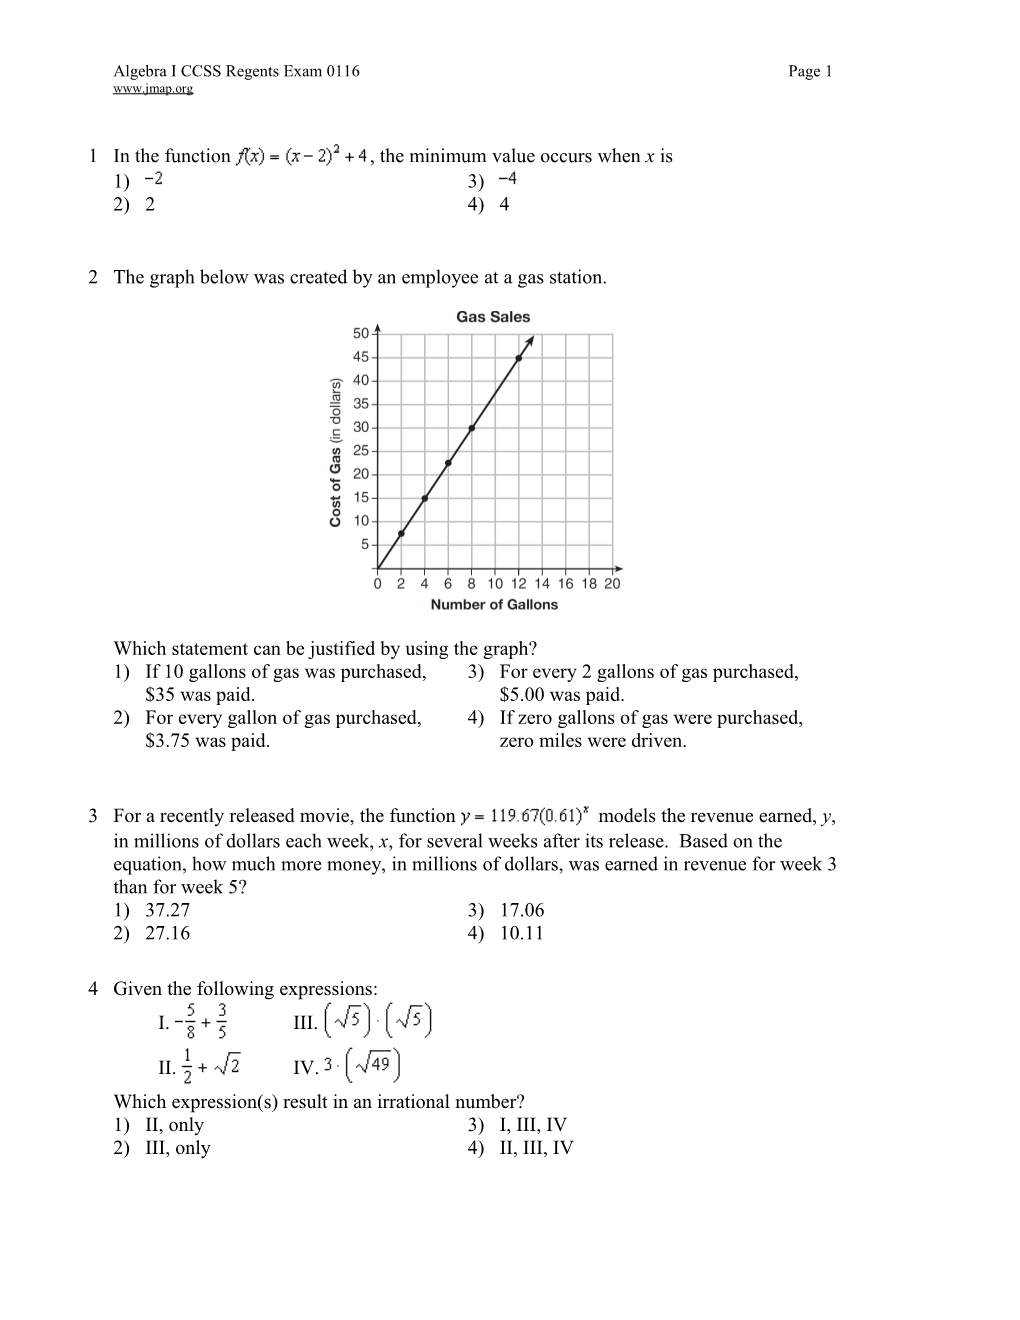 Algebra ICCSS Regents Exam 0116Page 1